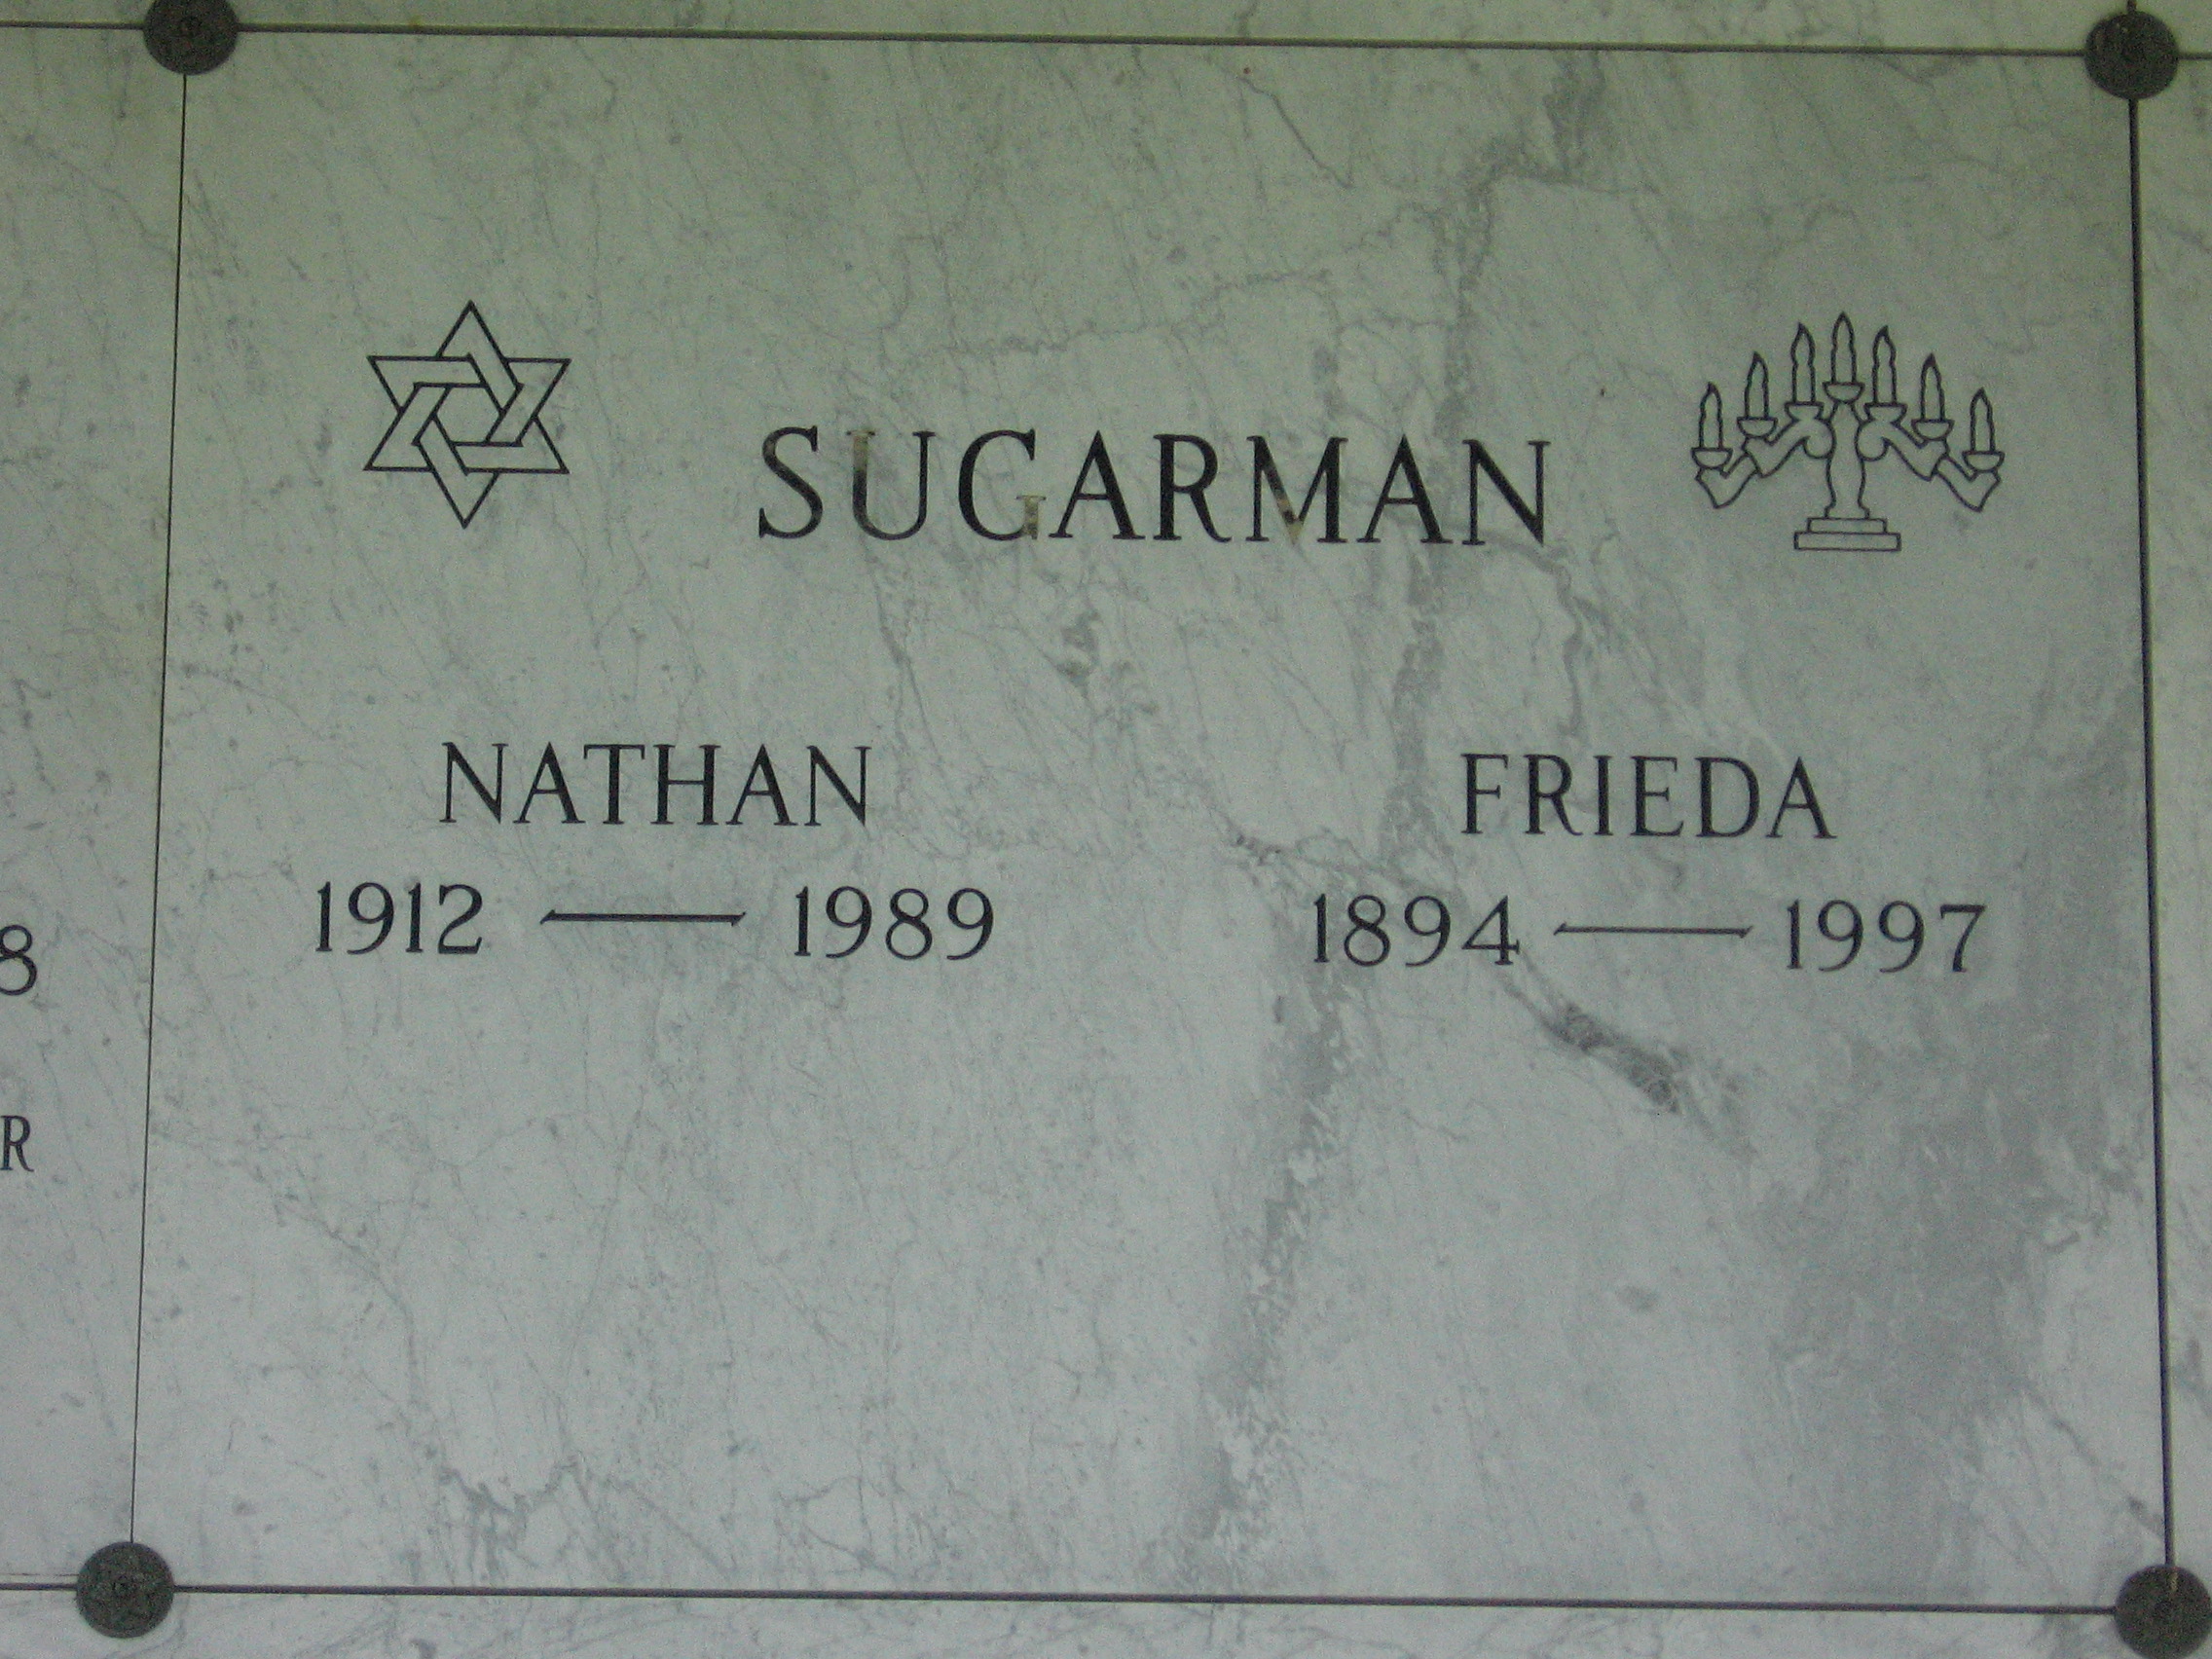 Nathan Sugarman